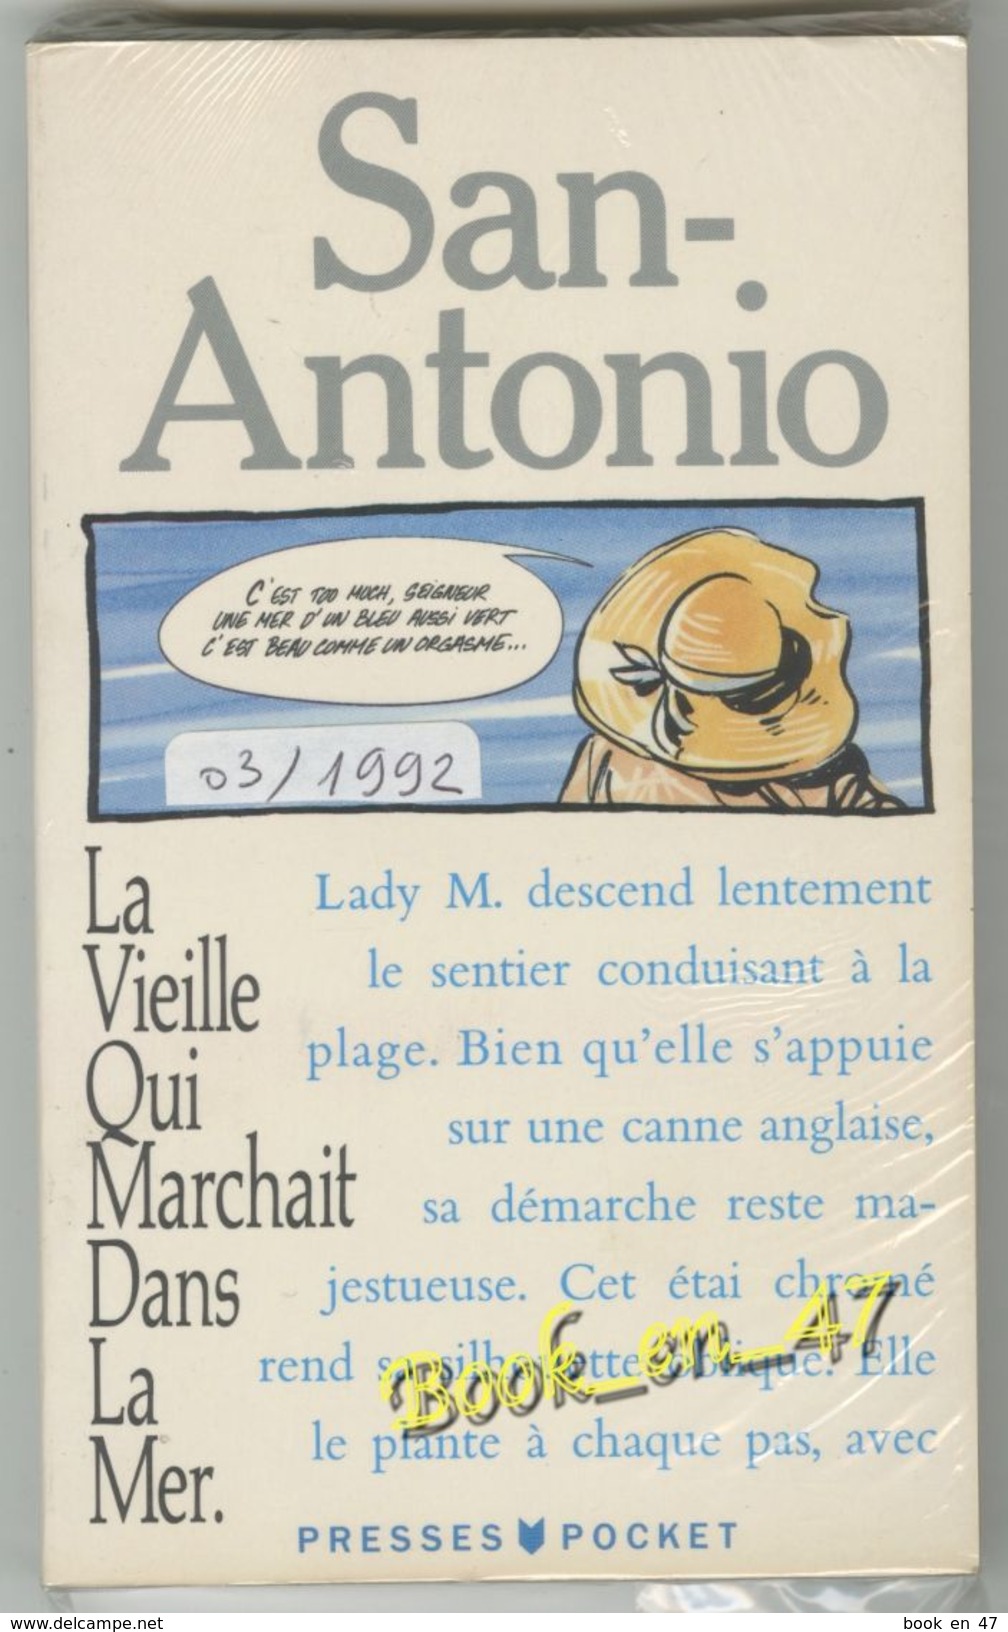 {81238} San-Antonio Hors Série , La Vieille Qui Marchait Dans La Mer  , 03/1992 ; Photo J Moreau .. " En Baisse " - San Antonio